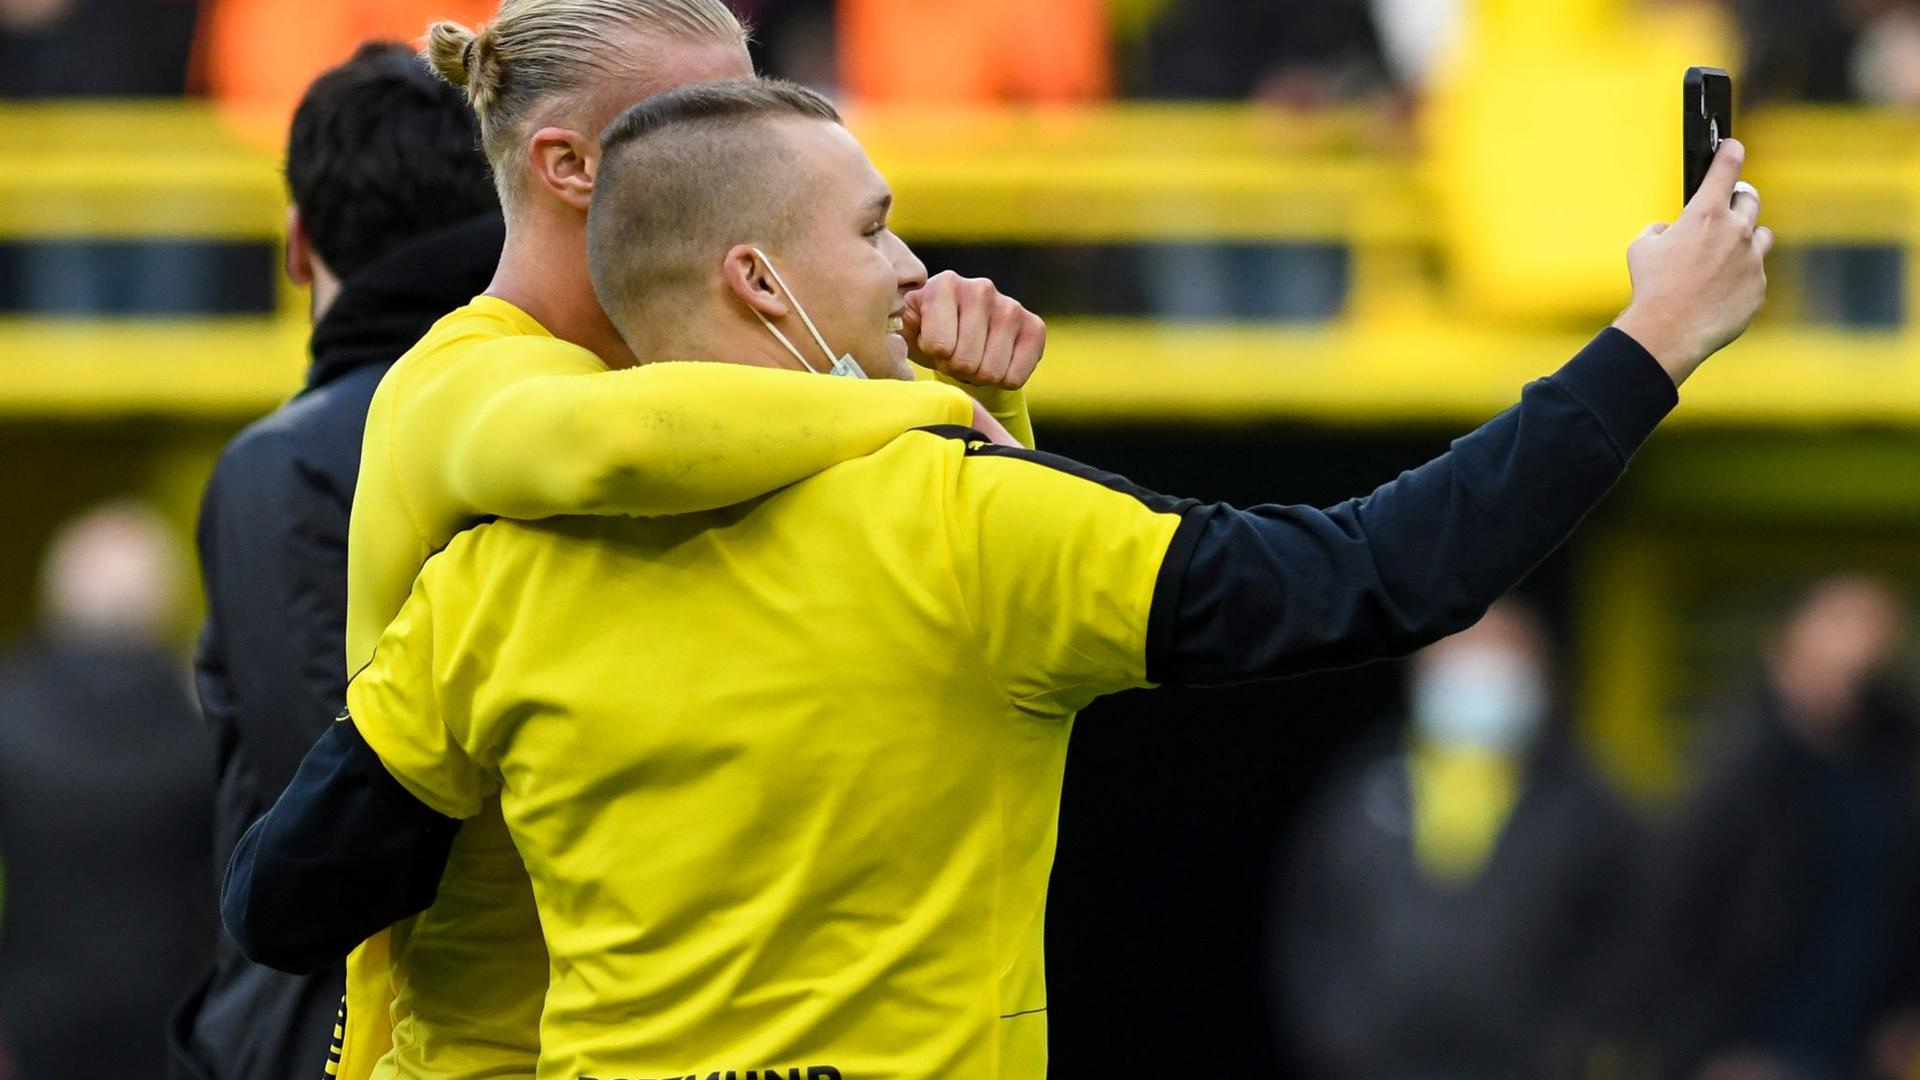 Erst Matchwinner, dann mit Fannähe: Dortmunds Stürmer Erling Haaland macht nach dem Sieg gegen Mainz ein Selfie mit einem Fan.